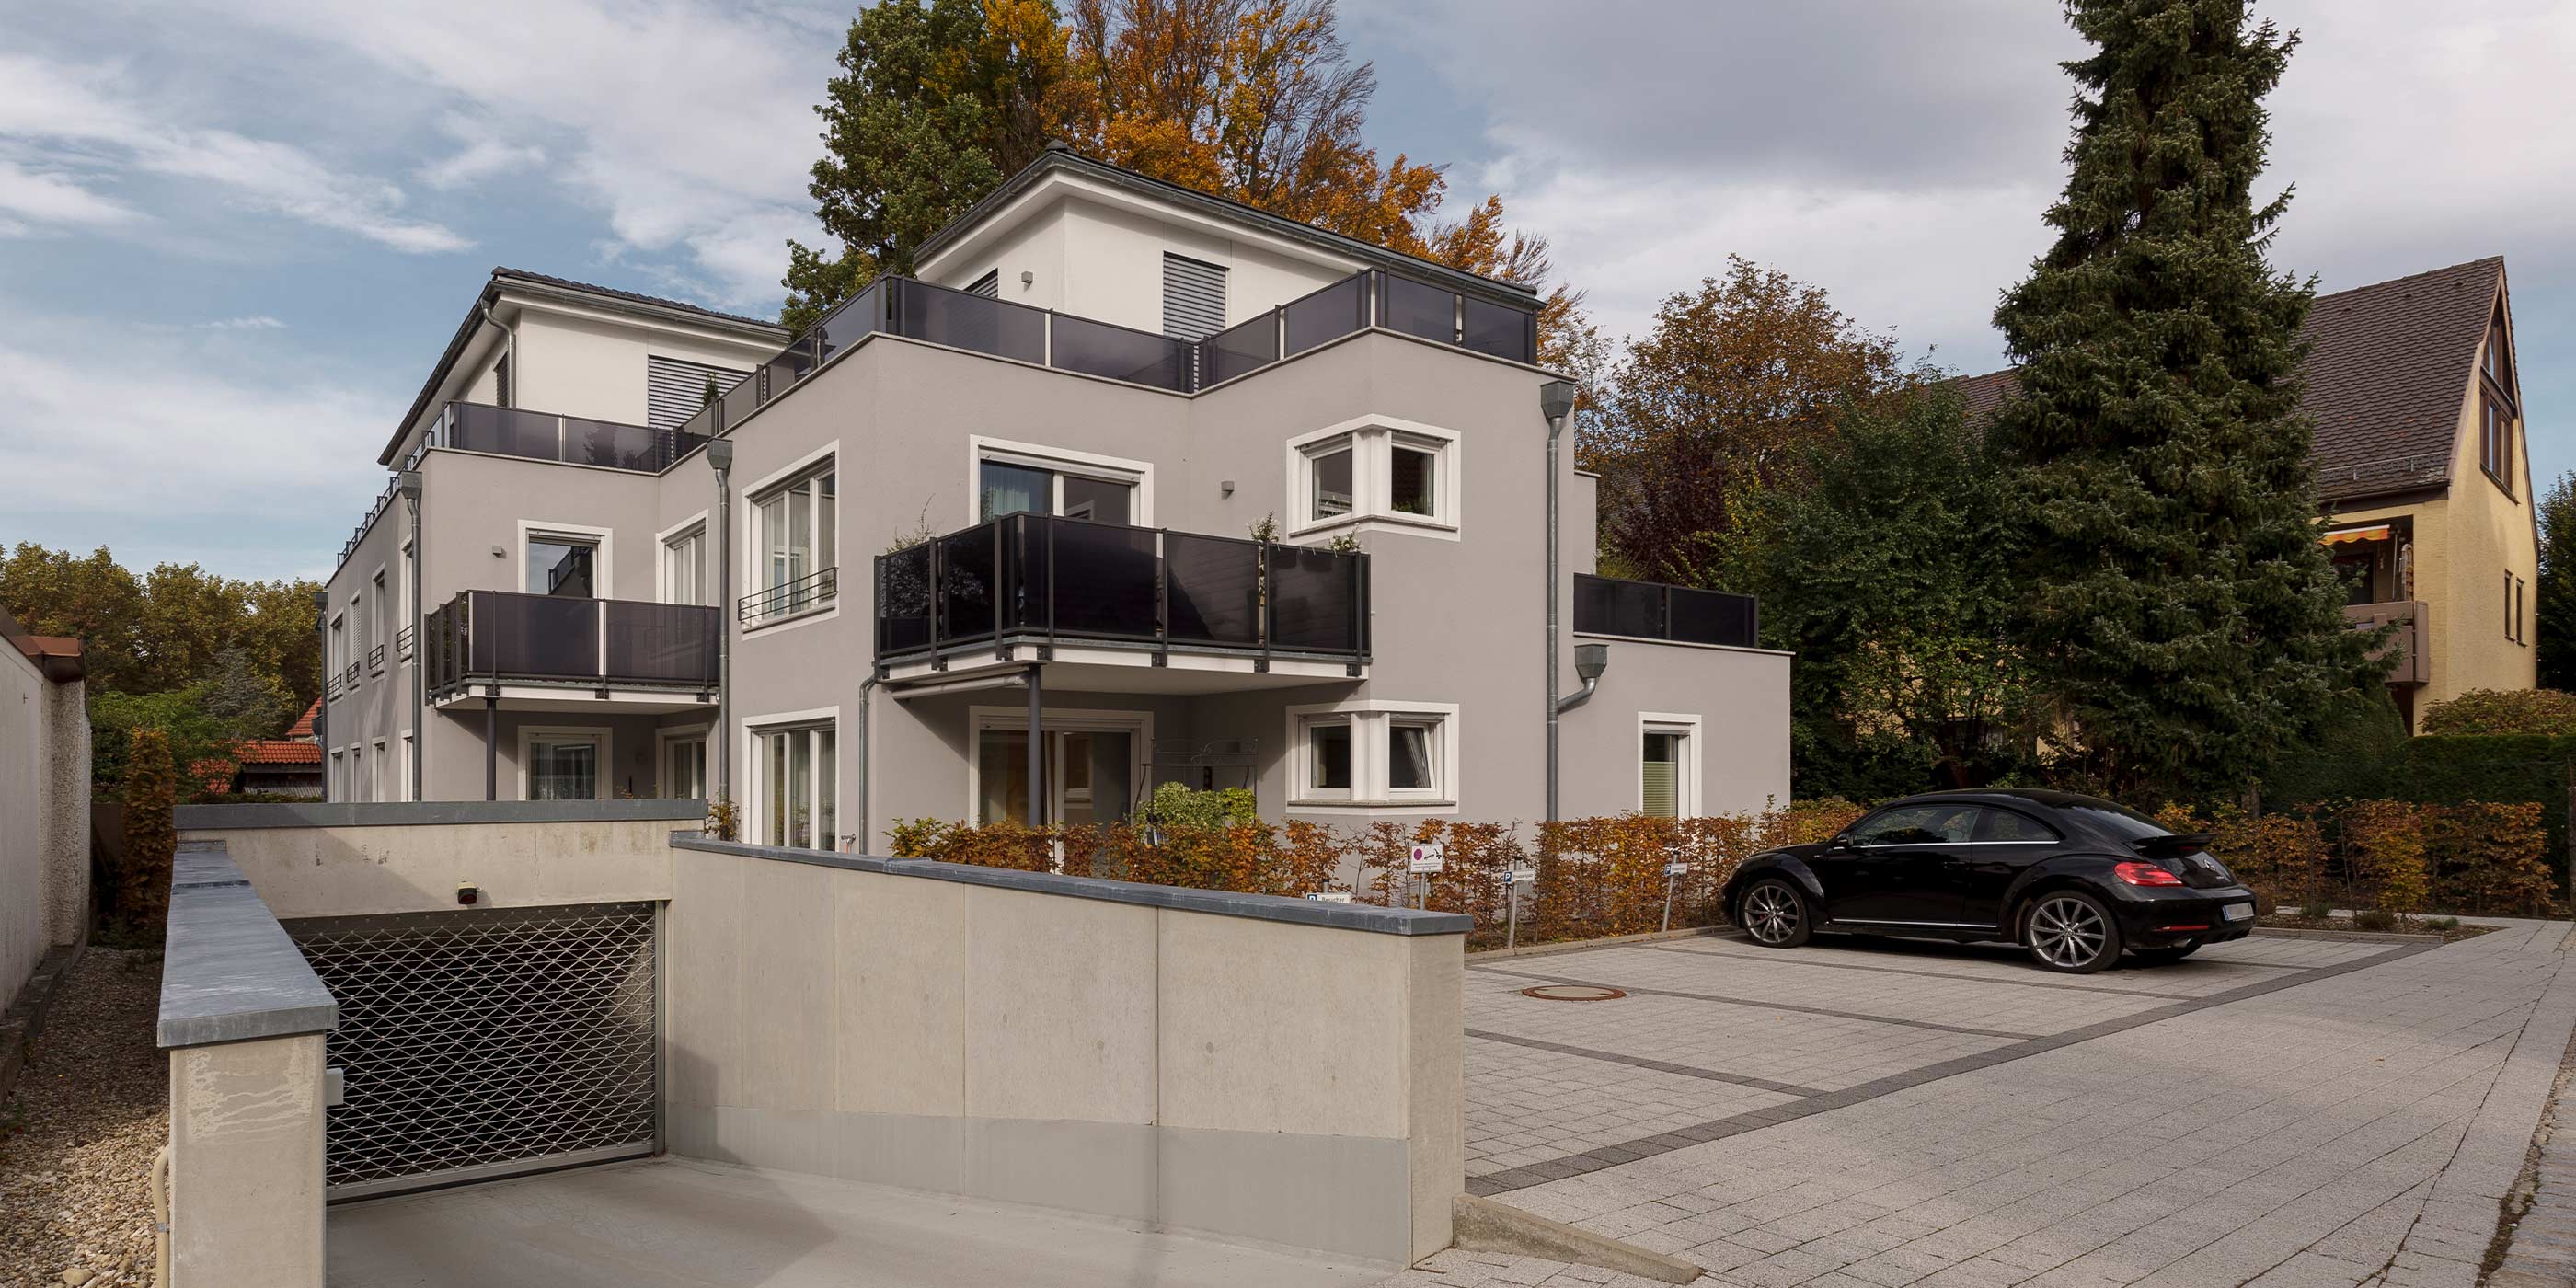 Mehrfamilienhaus in Memmingen, Spinnereiweg 1